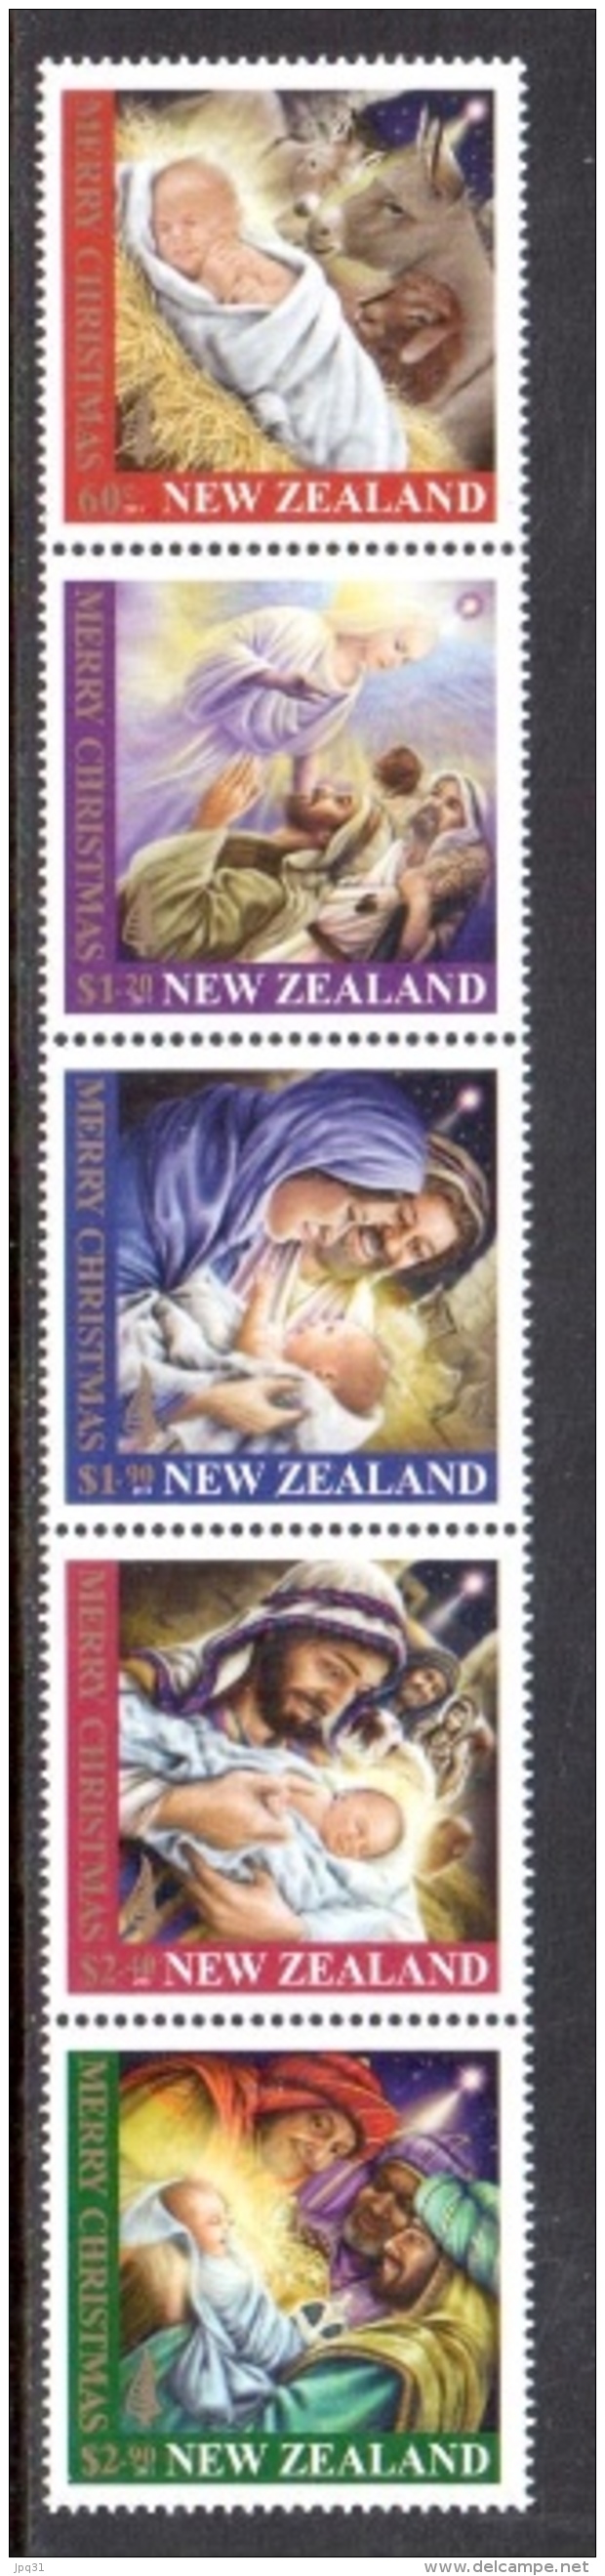 Nvlle Zélande - Noël 2011 - Tirage Spécial Loyalty Reward ** - Unused Stamps